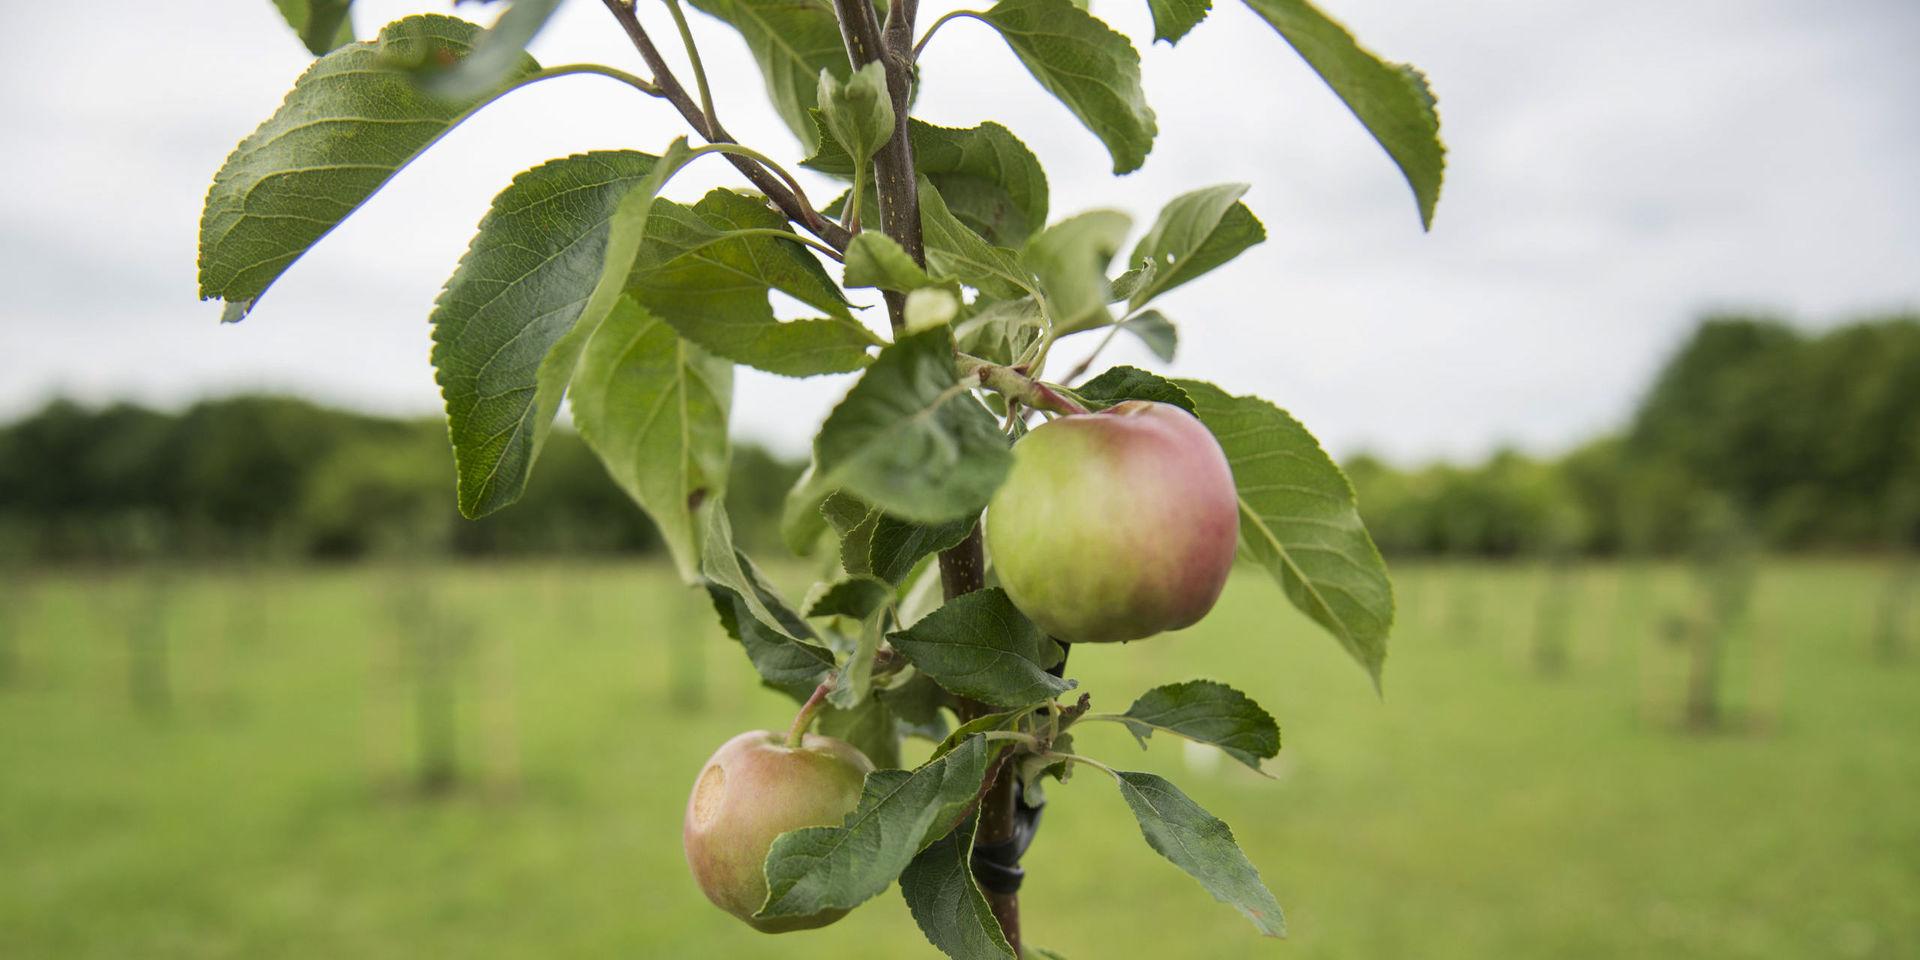 Även om jorden går under i morgon så planterar jag mitt äppelträd i dag, sa Martin Luther.